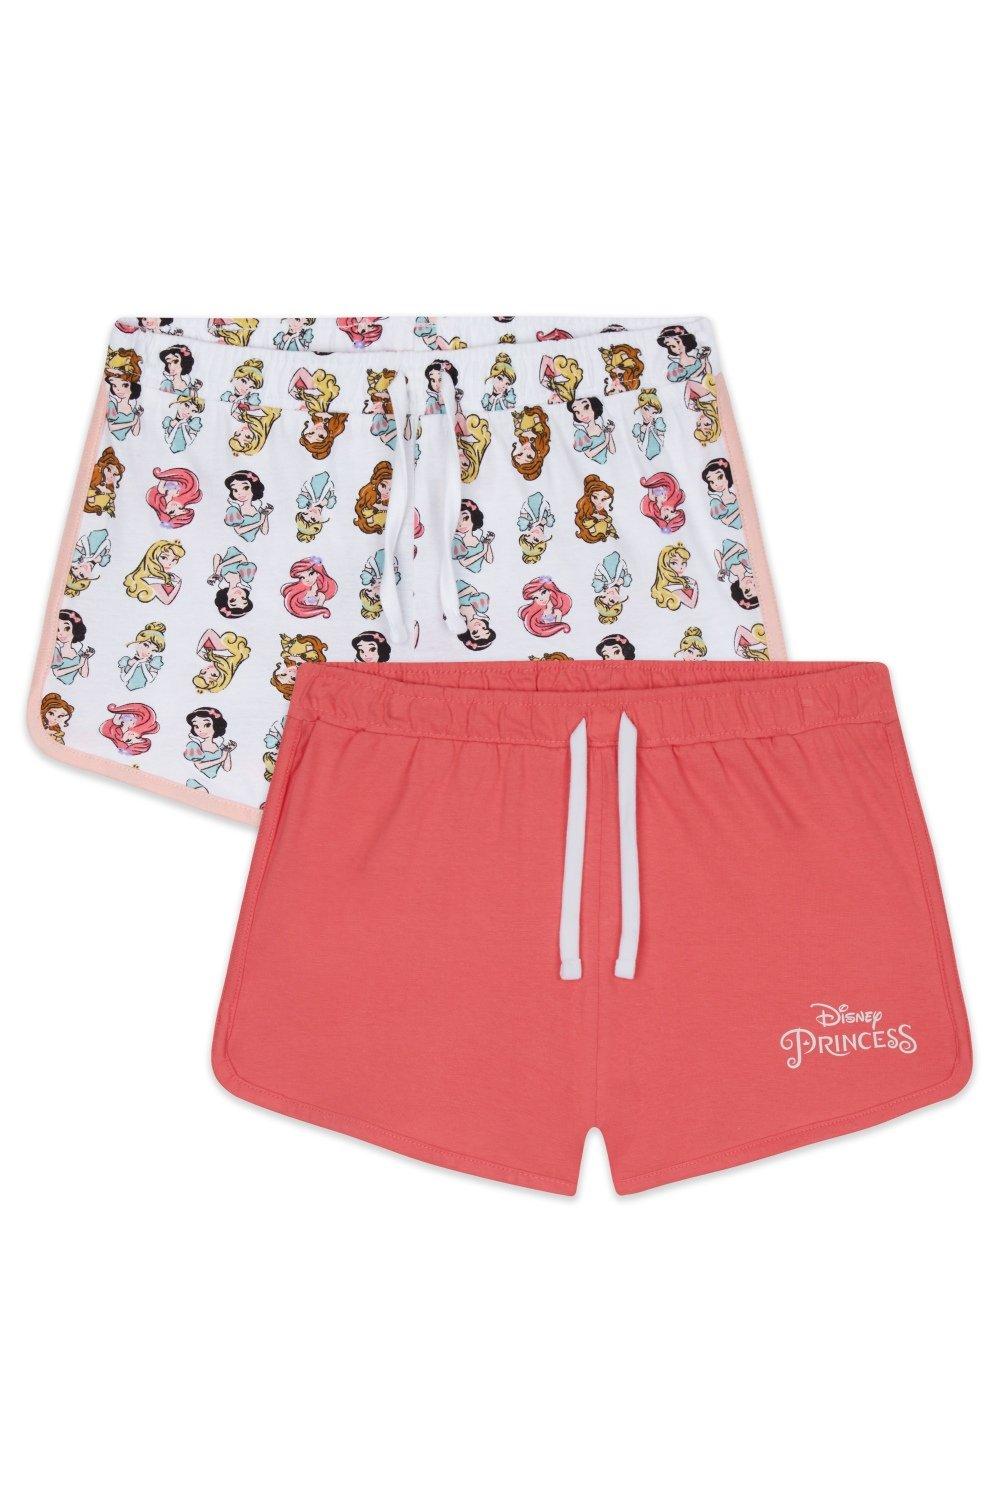 Princess 2 Pack Shorts